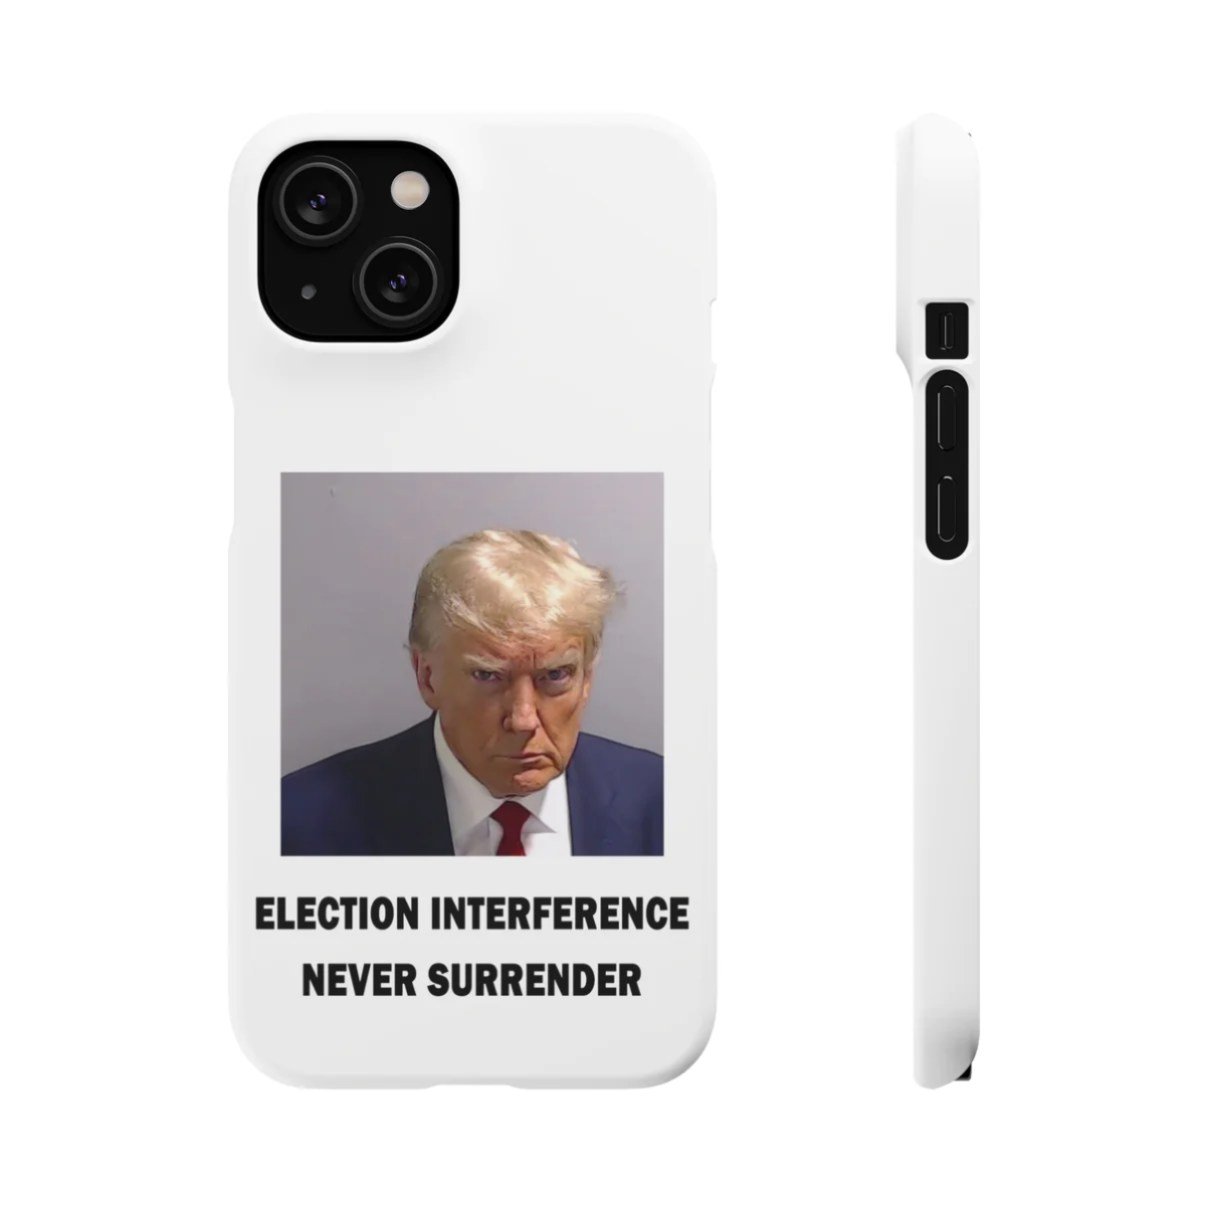 A Trump mugshot version of a phone case